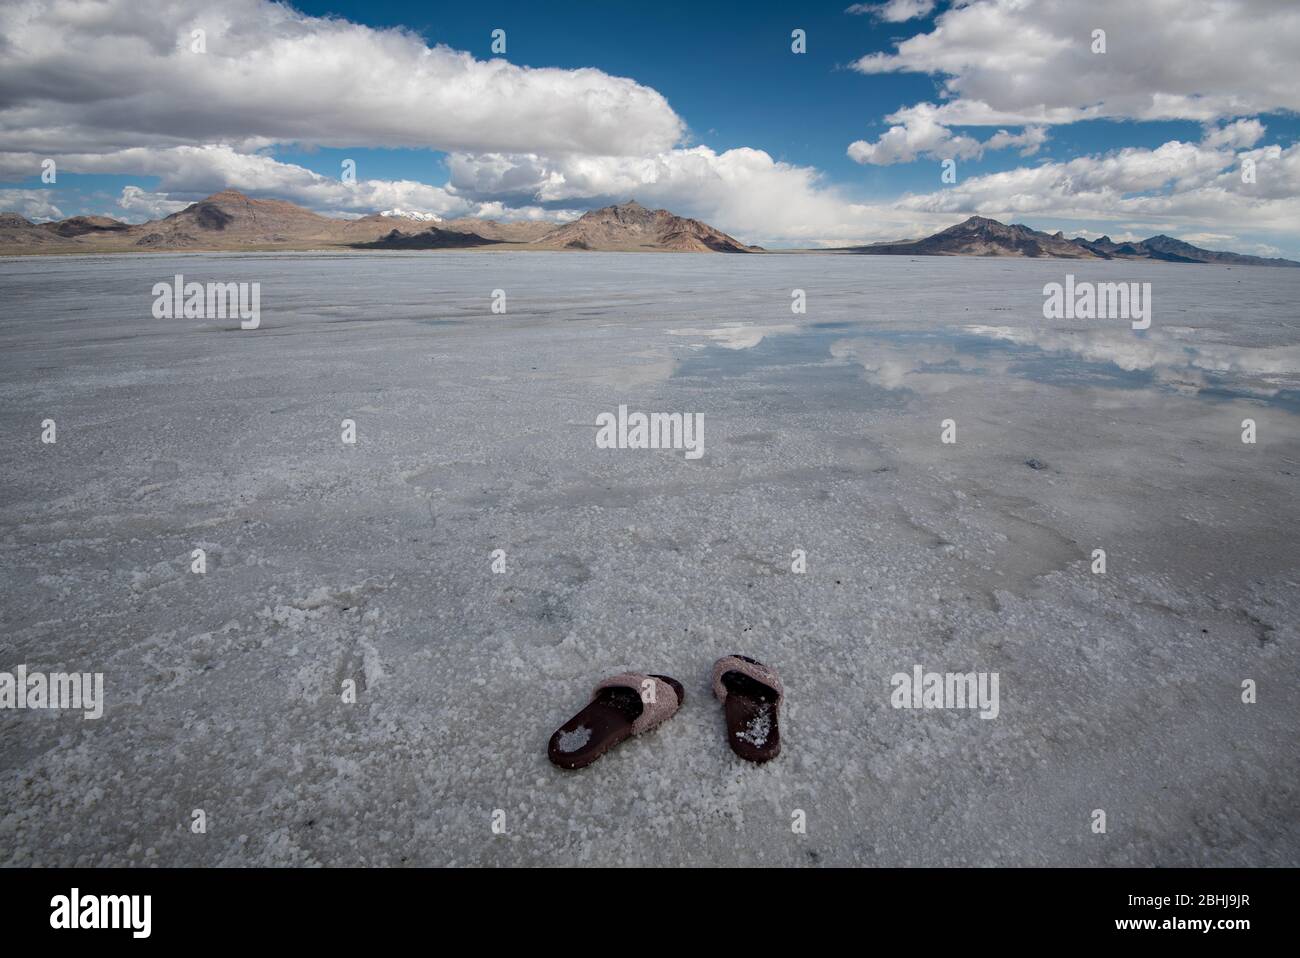 Zapatos olvidados o abandonados en las salinas de Bonneville Salt Flats en el oeste de Utah, Estados Unidos. Es casi como si hubiera un "secuestro alienígena". Foto de stock